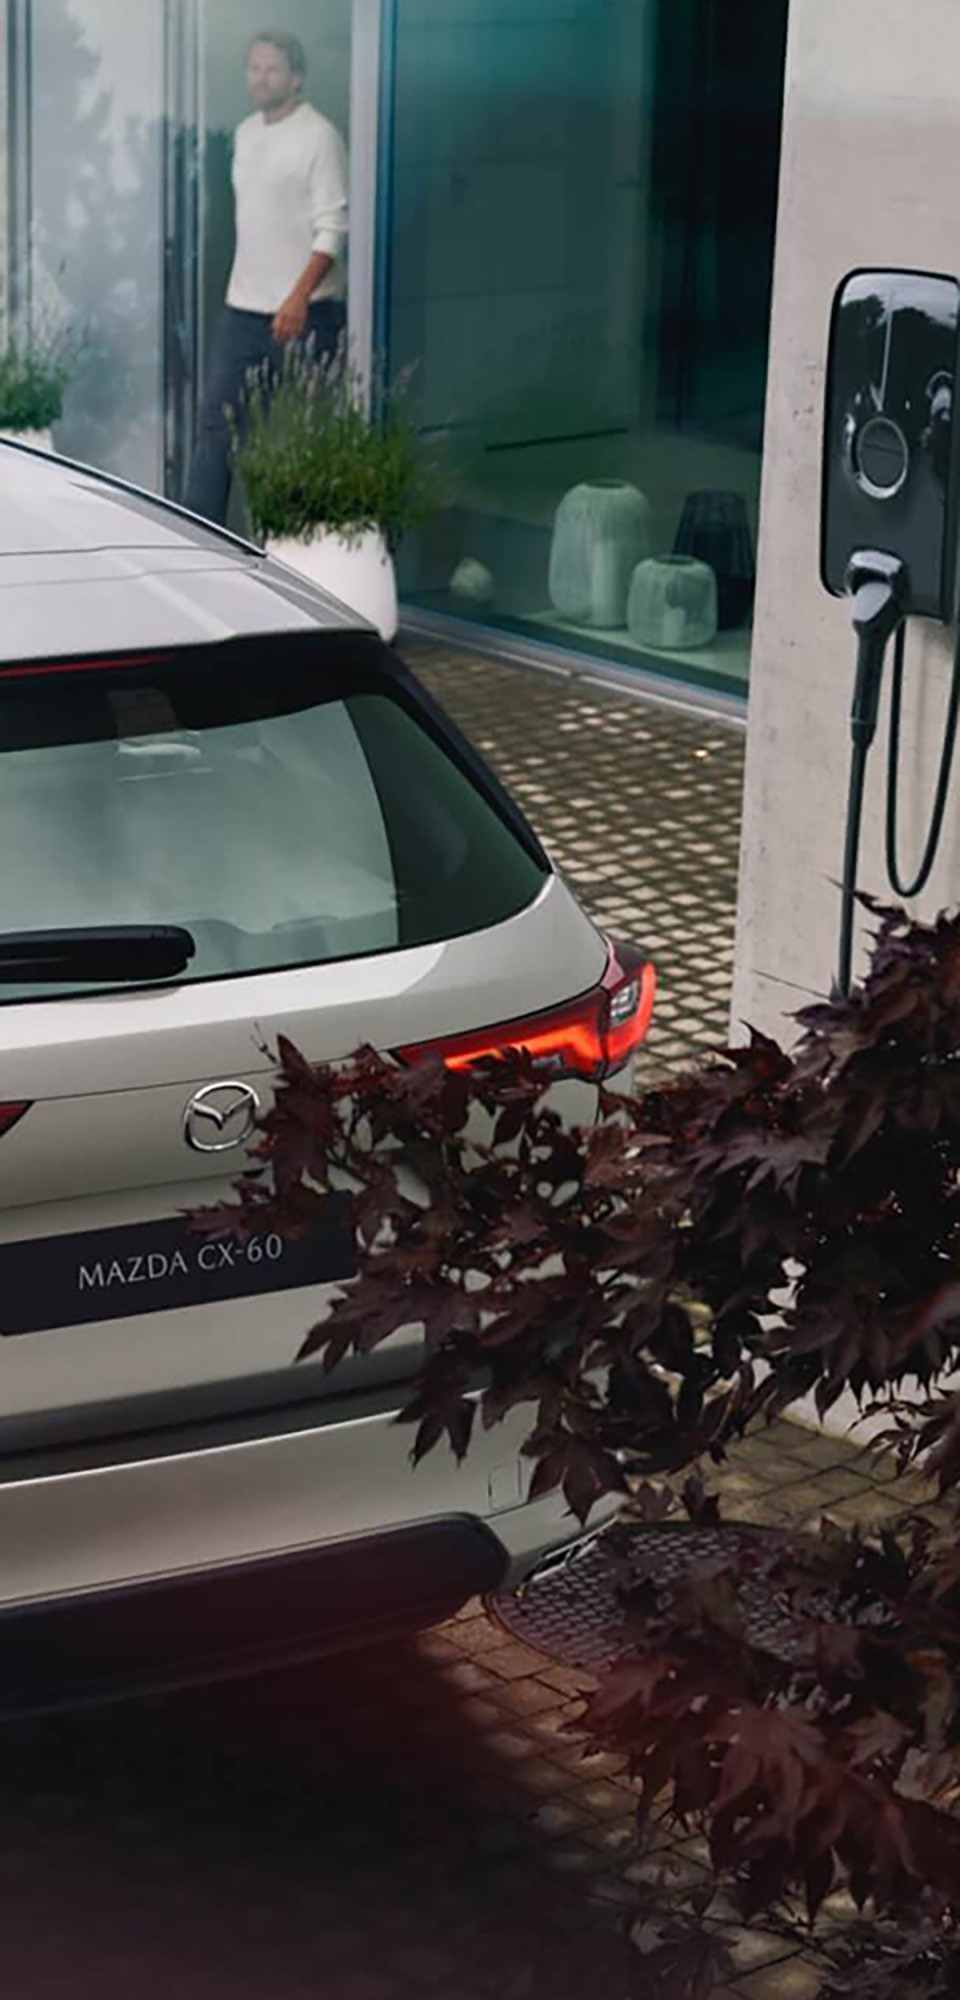 La All-New Mazda CX-60 SUV hybride rechargeable garée près d'une borne de recharge pour le chargement à domicile.